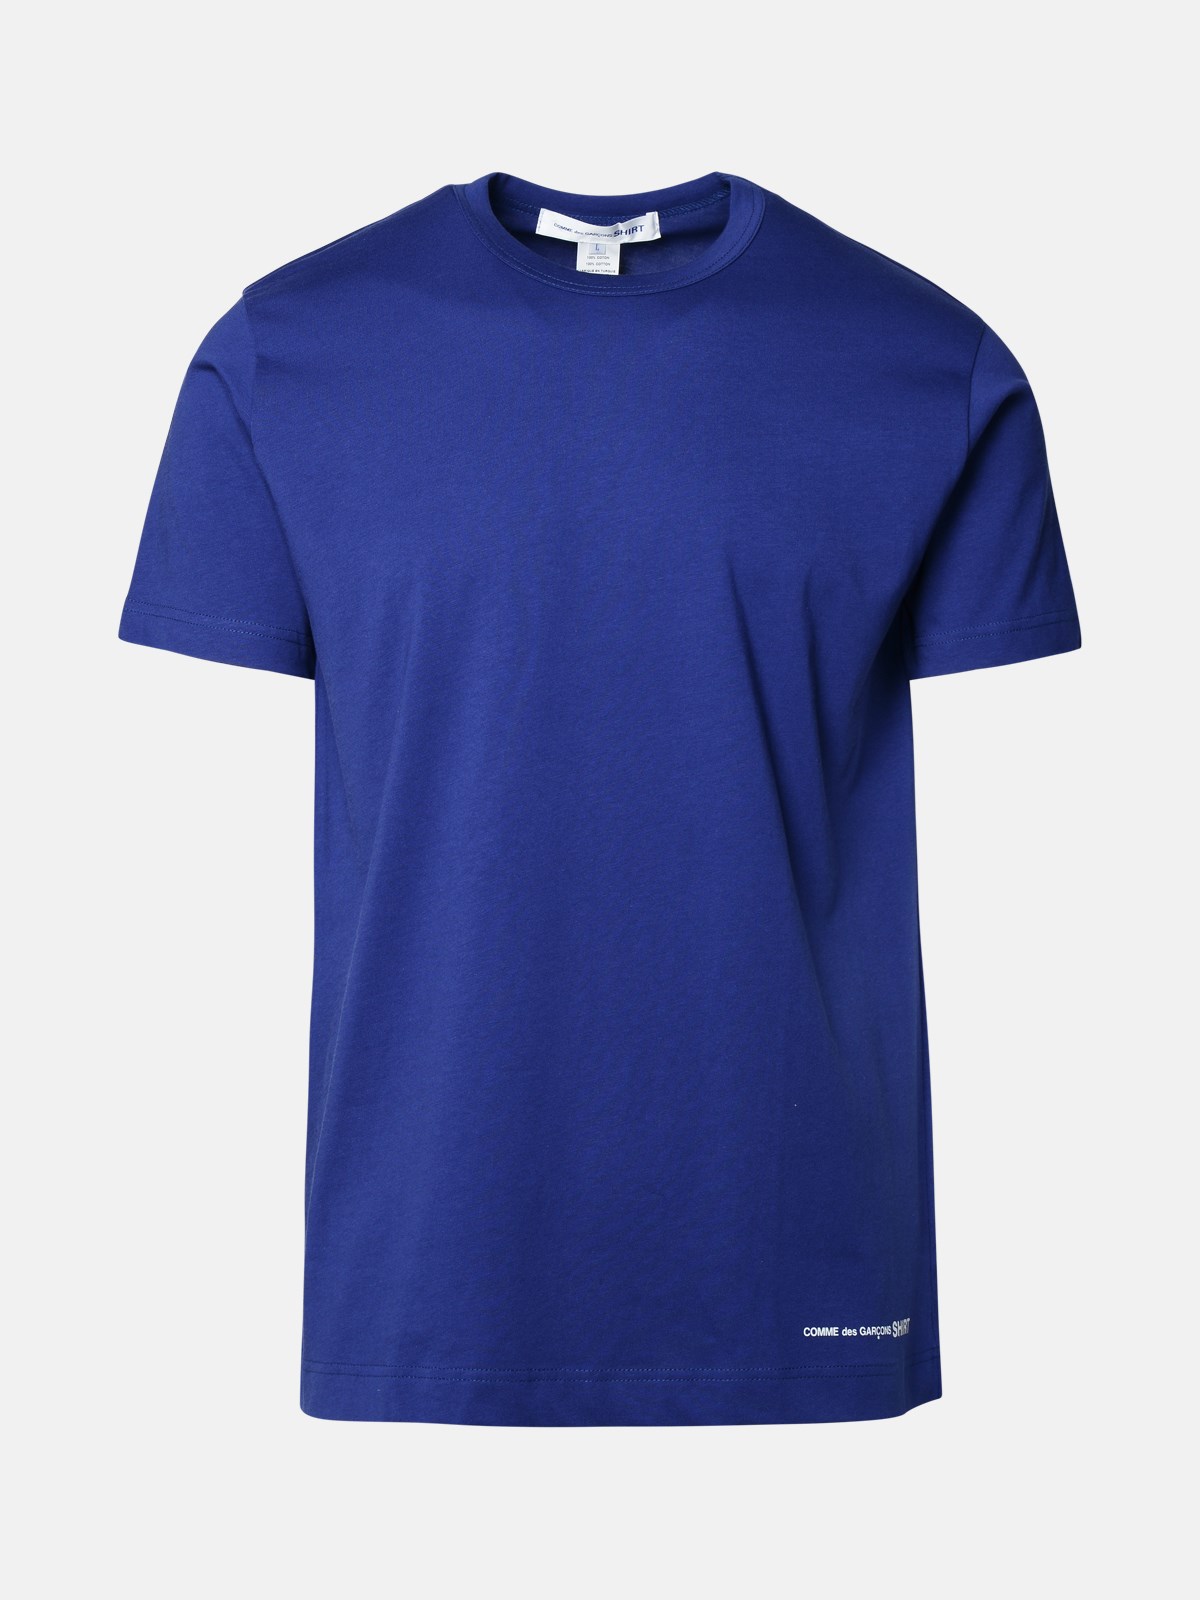 Comme Des Garçons Shirt Blue Cotton T-shirt In Navy